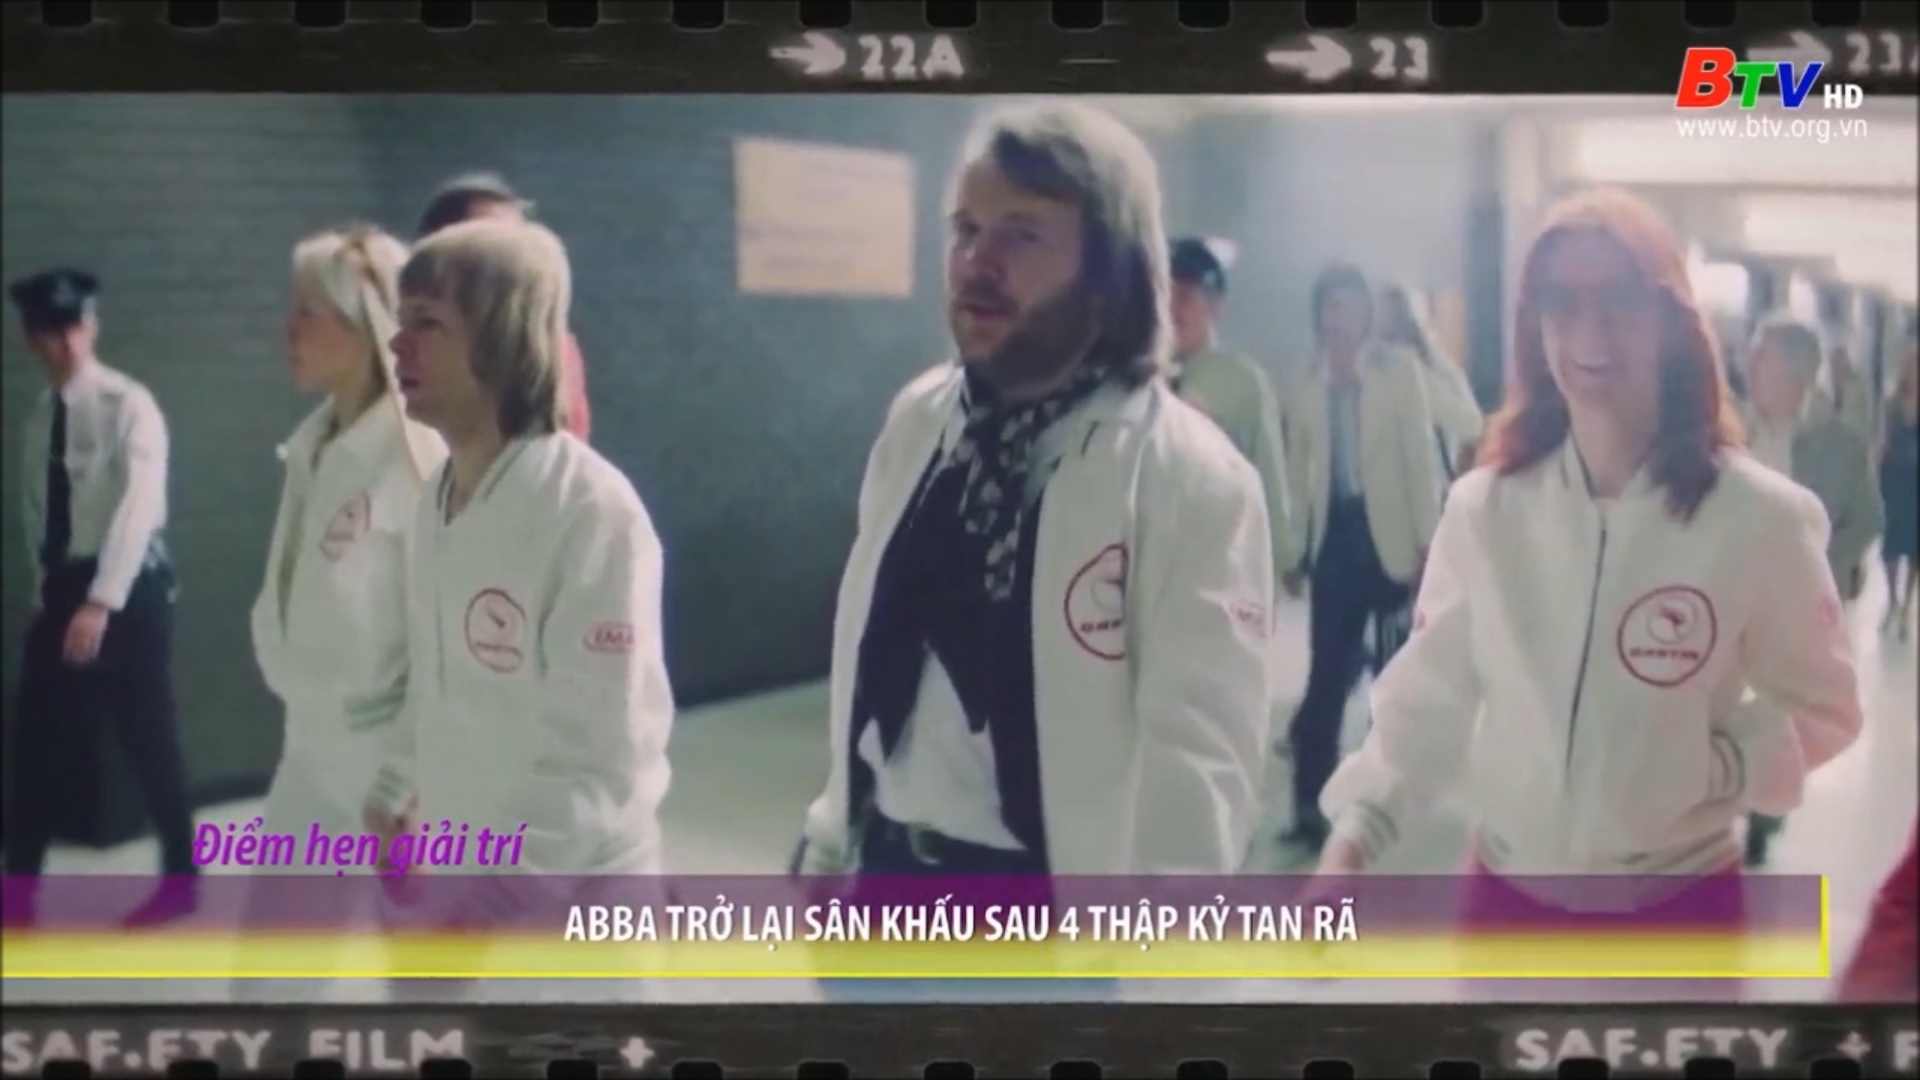 ABBA trở lại sân khấu sau 4 thập kỷ tan rã